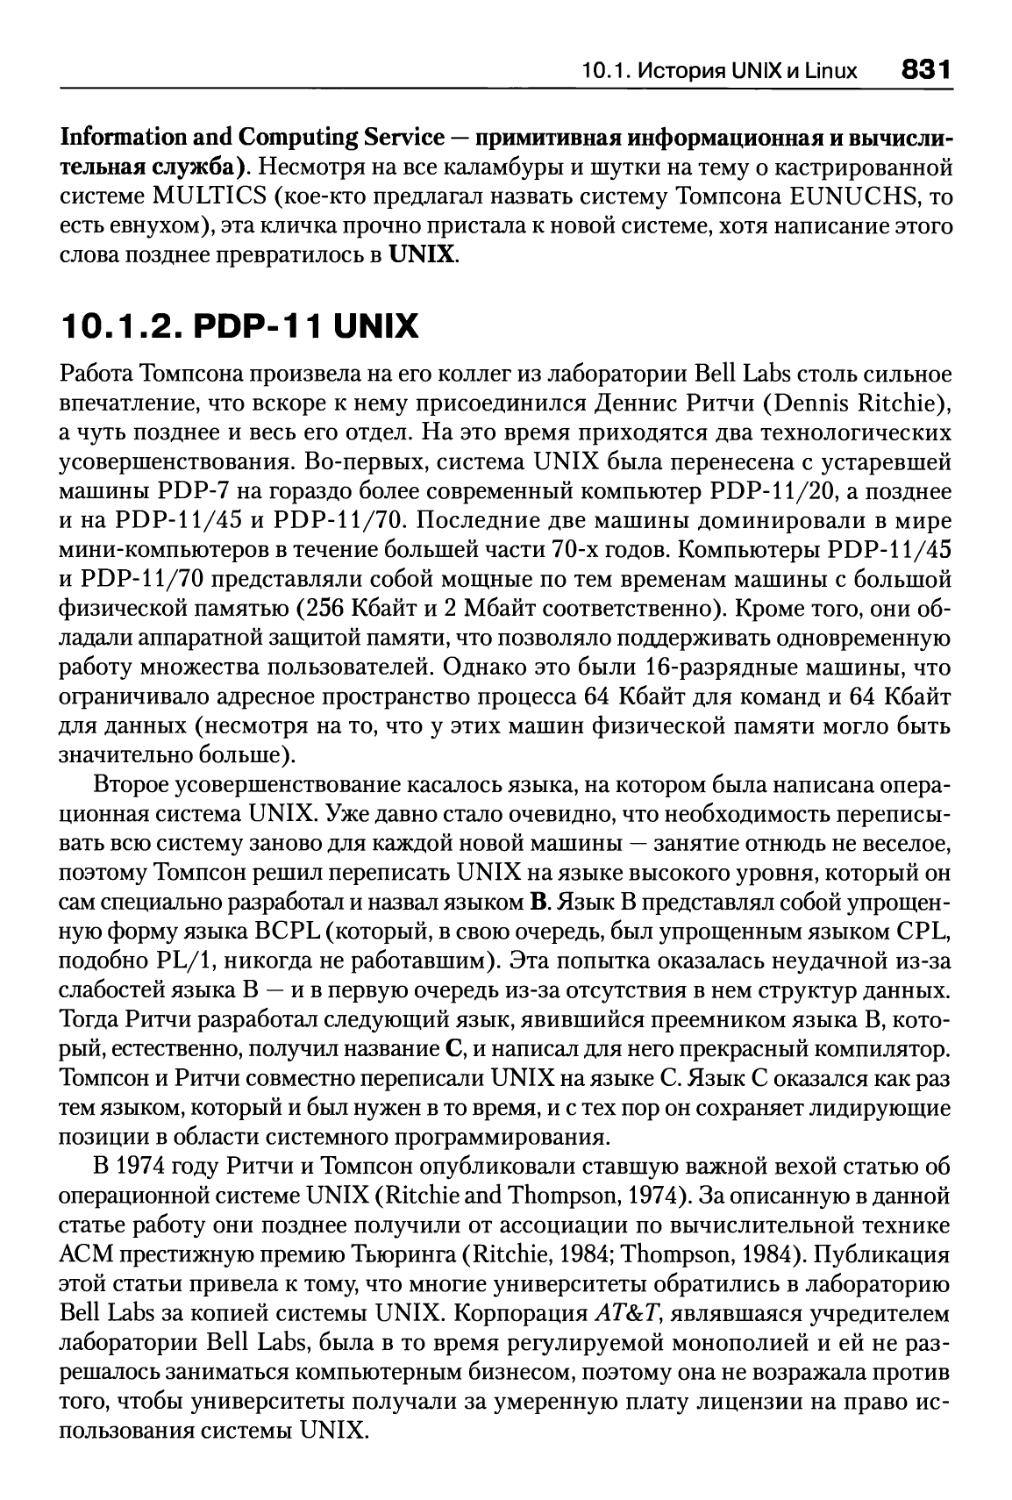 10.1.2. PDP-11 UNIX